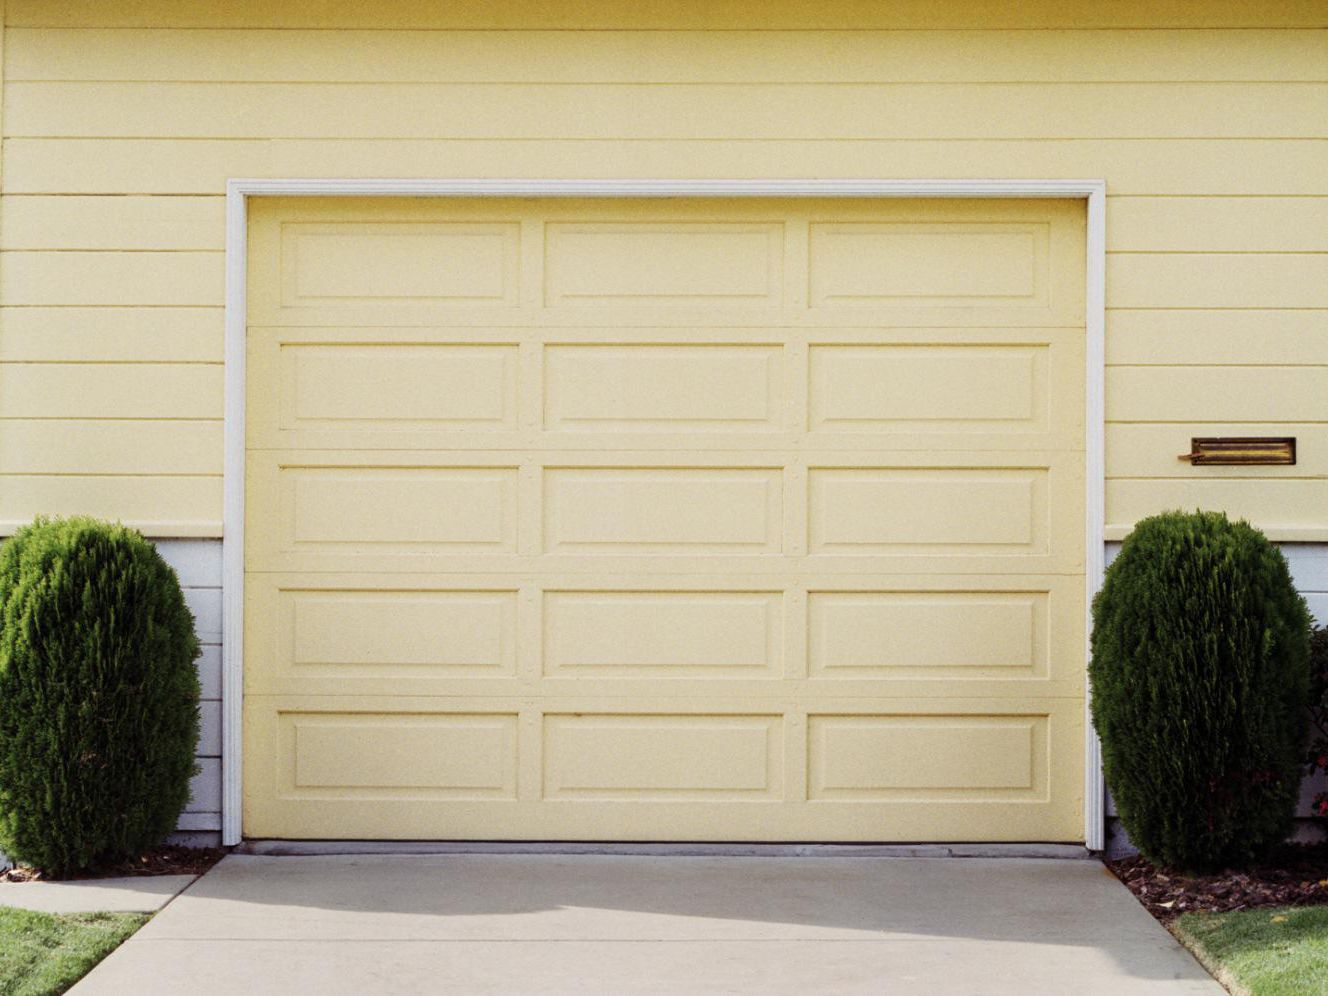 Can you fix your garage door?